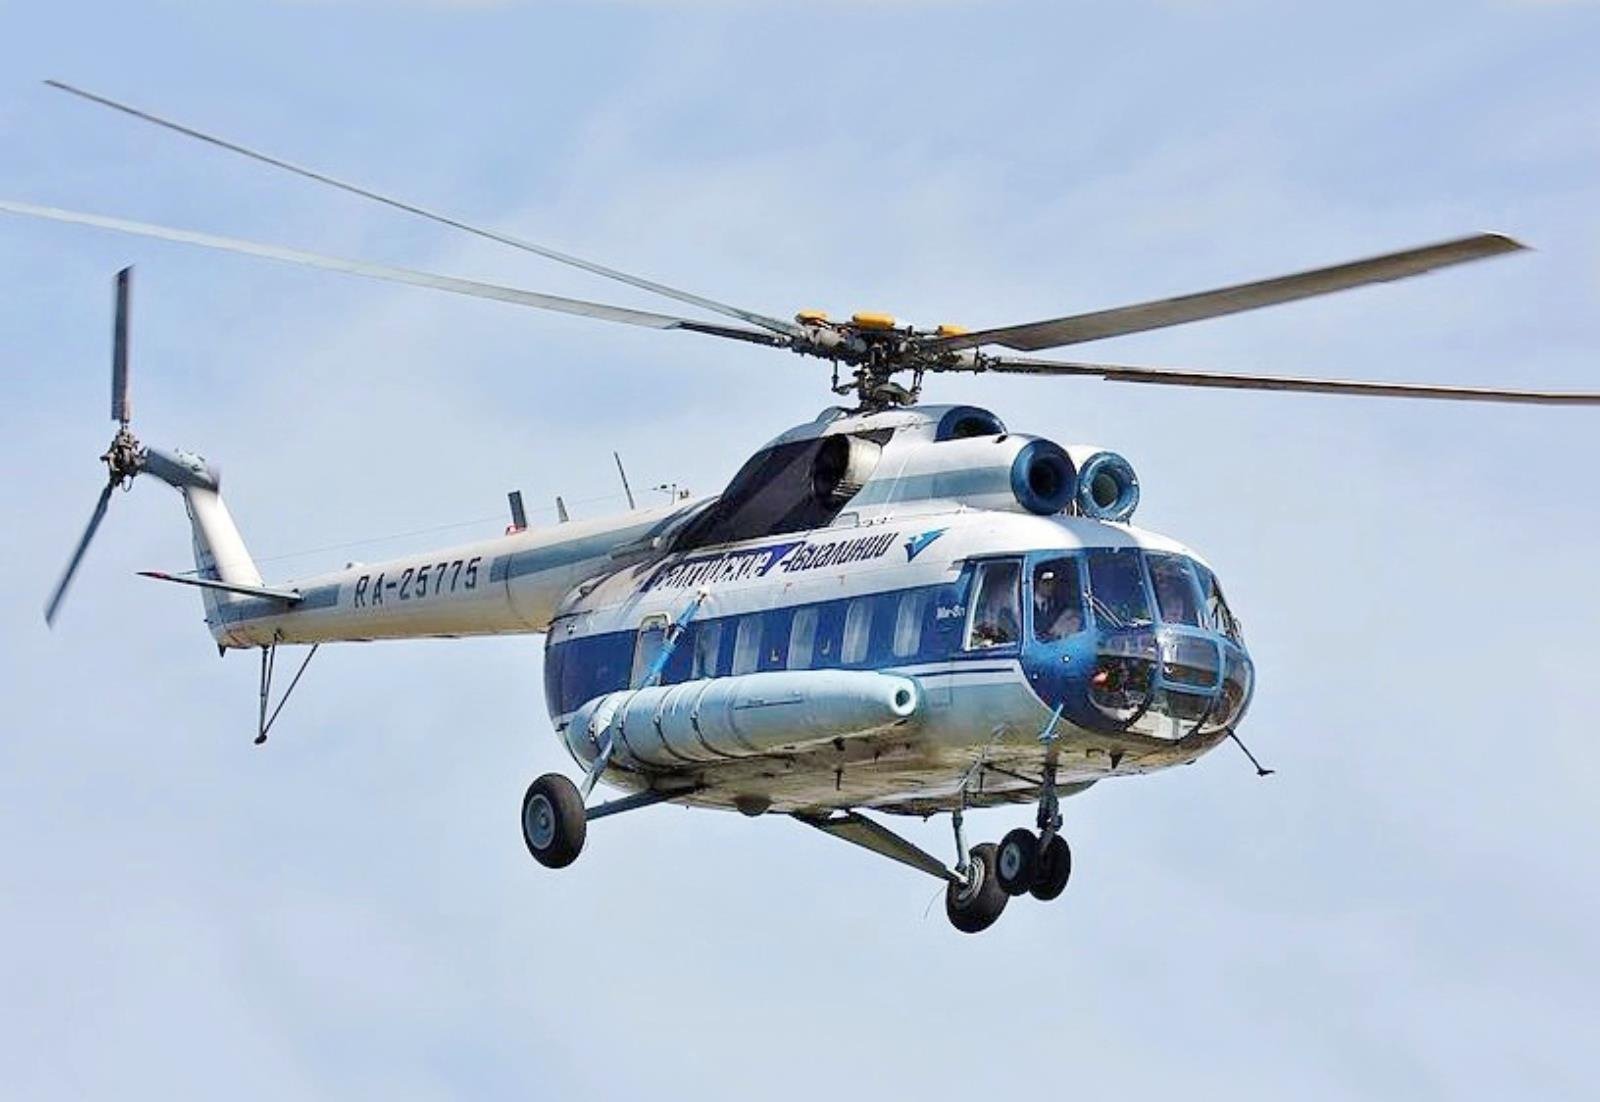 Mi-8, rosyjski helikopter, rosyjki helikopter transportowy, katastroa Mi-8